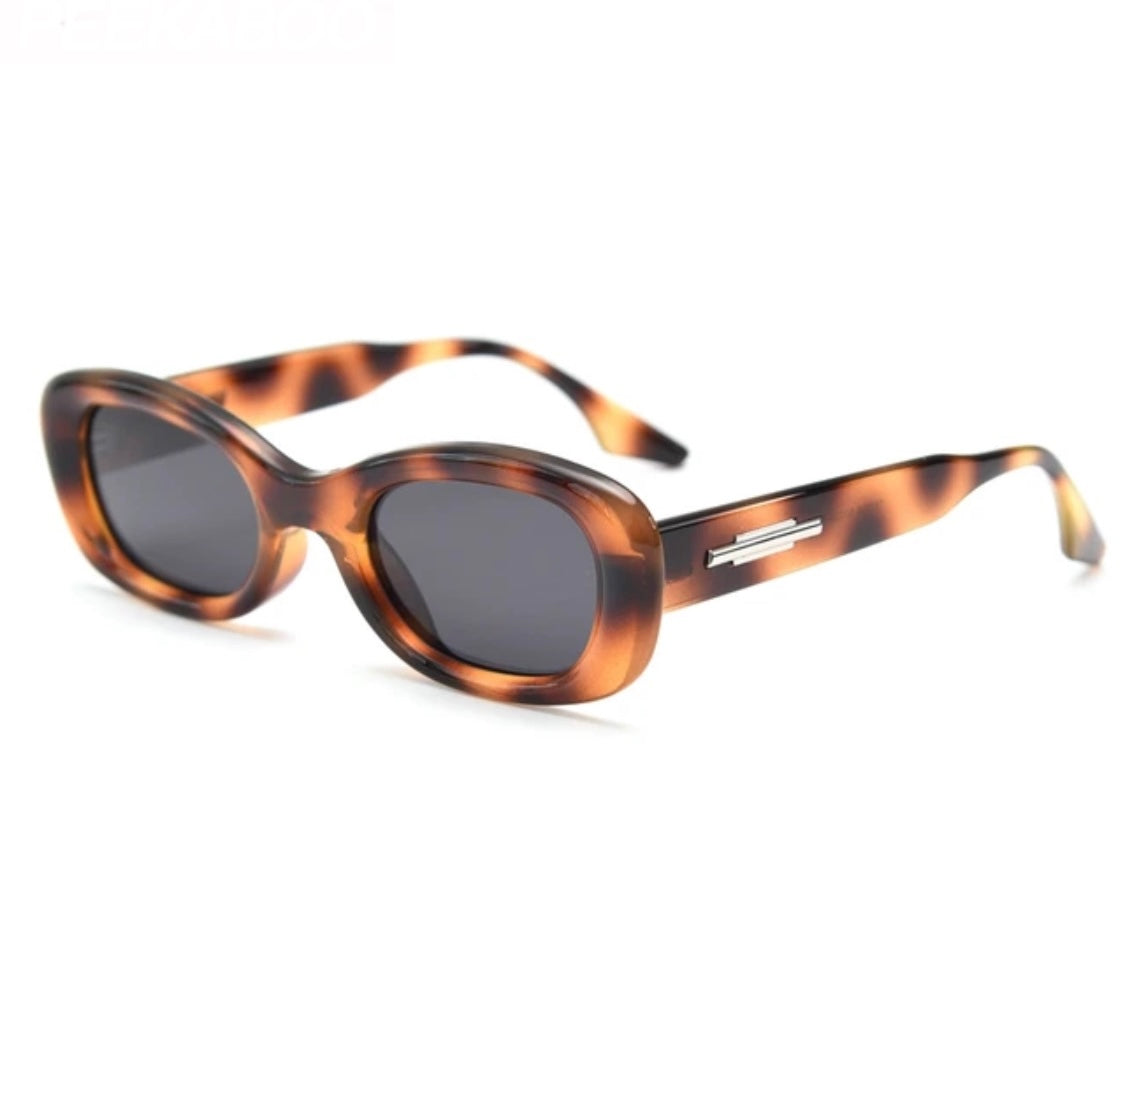 Jodykoes® Retro Style Vintage-Inspired Cat Eye Sunglasses Eyewear For Women (Leopard Print)